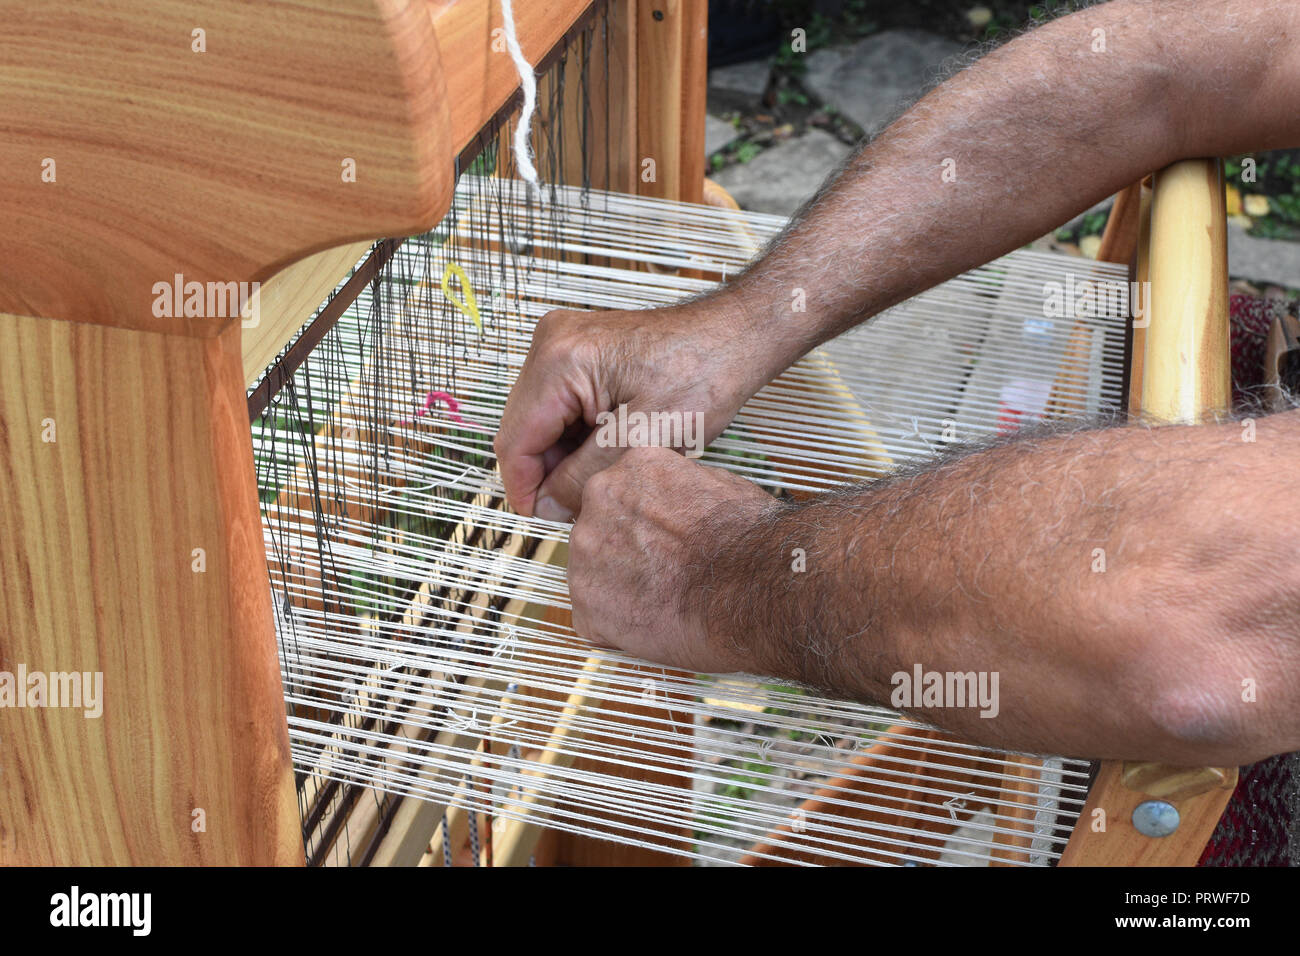 Hände von Mann mittleren Alters - Handwerker Weber - Arbeiten auf hölzernen Handwebstuhl, Etara ethnographische finden, Bulgarien Stockfoto